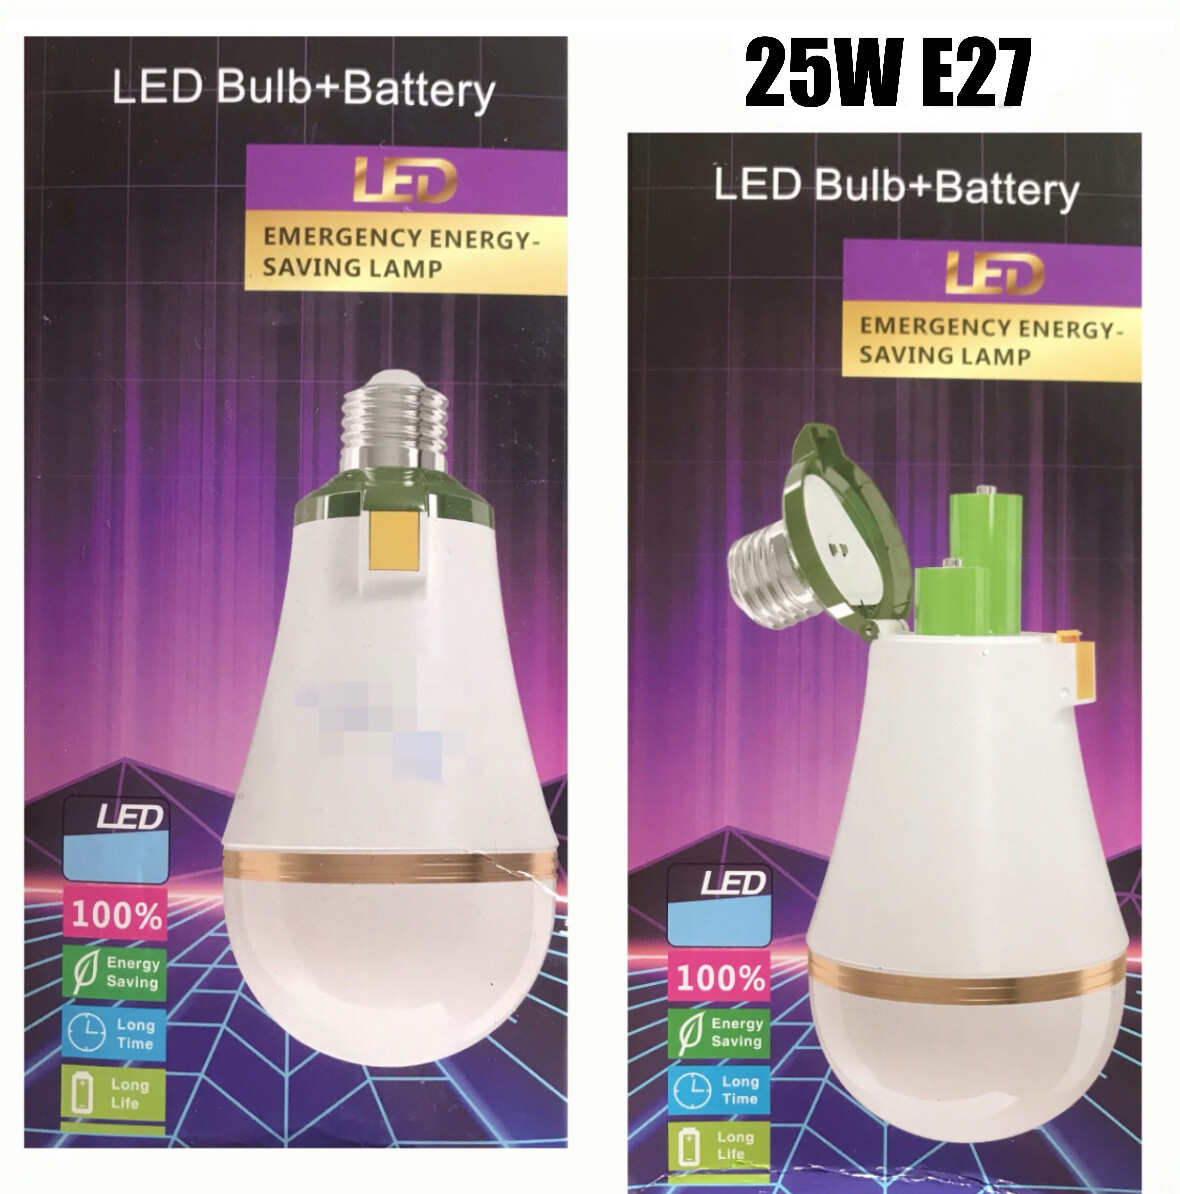 LED Bulb+Battery 25W